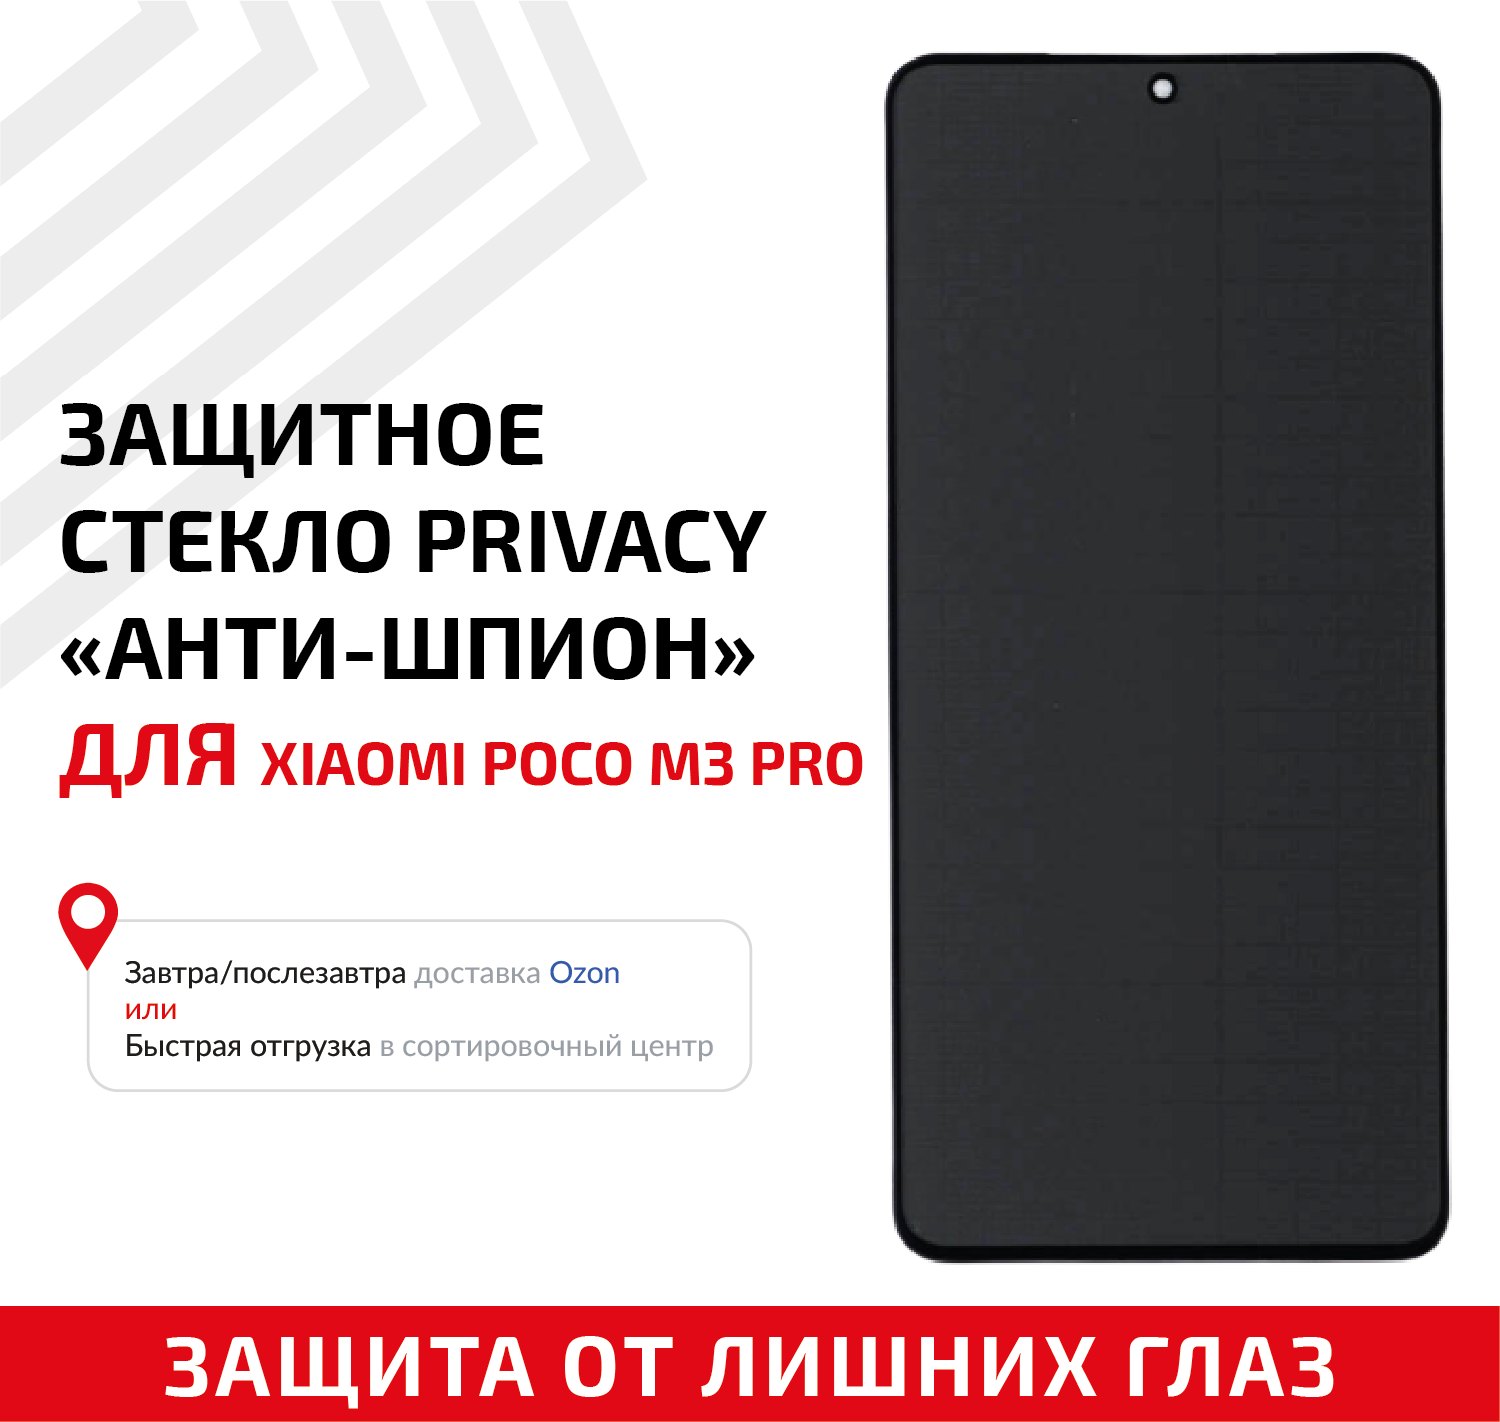 Защитное стекло Privacy "Анти-шпион" для мобильного телефона (смартфона) Xiaomi Poco M3 Pro, черное